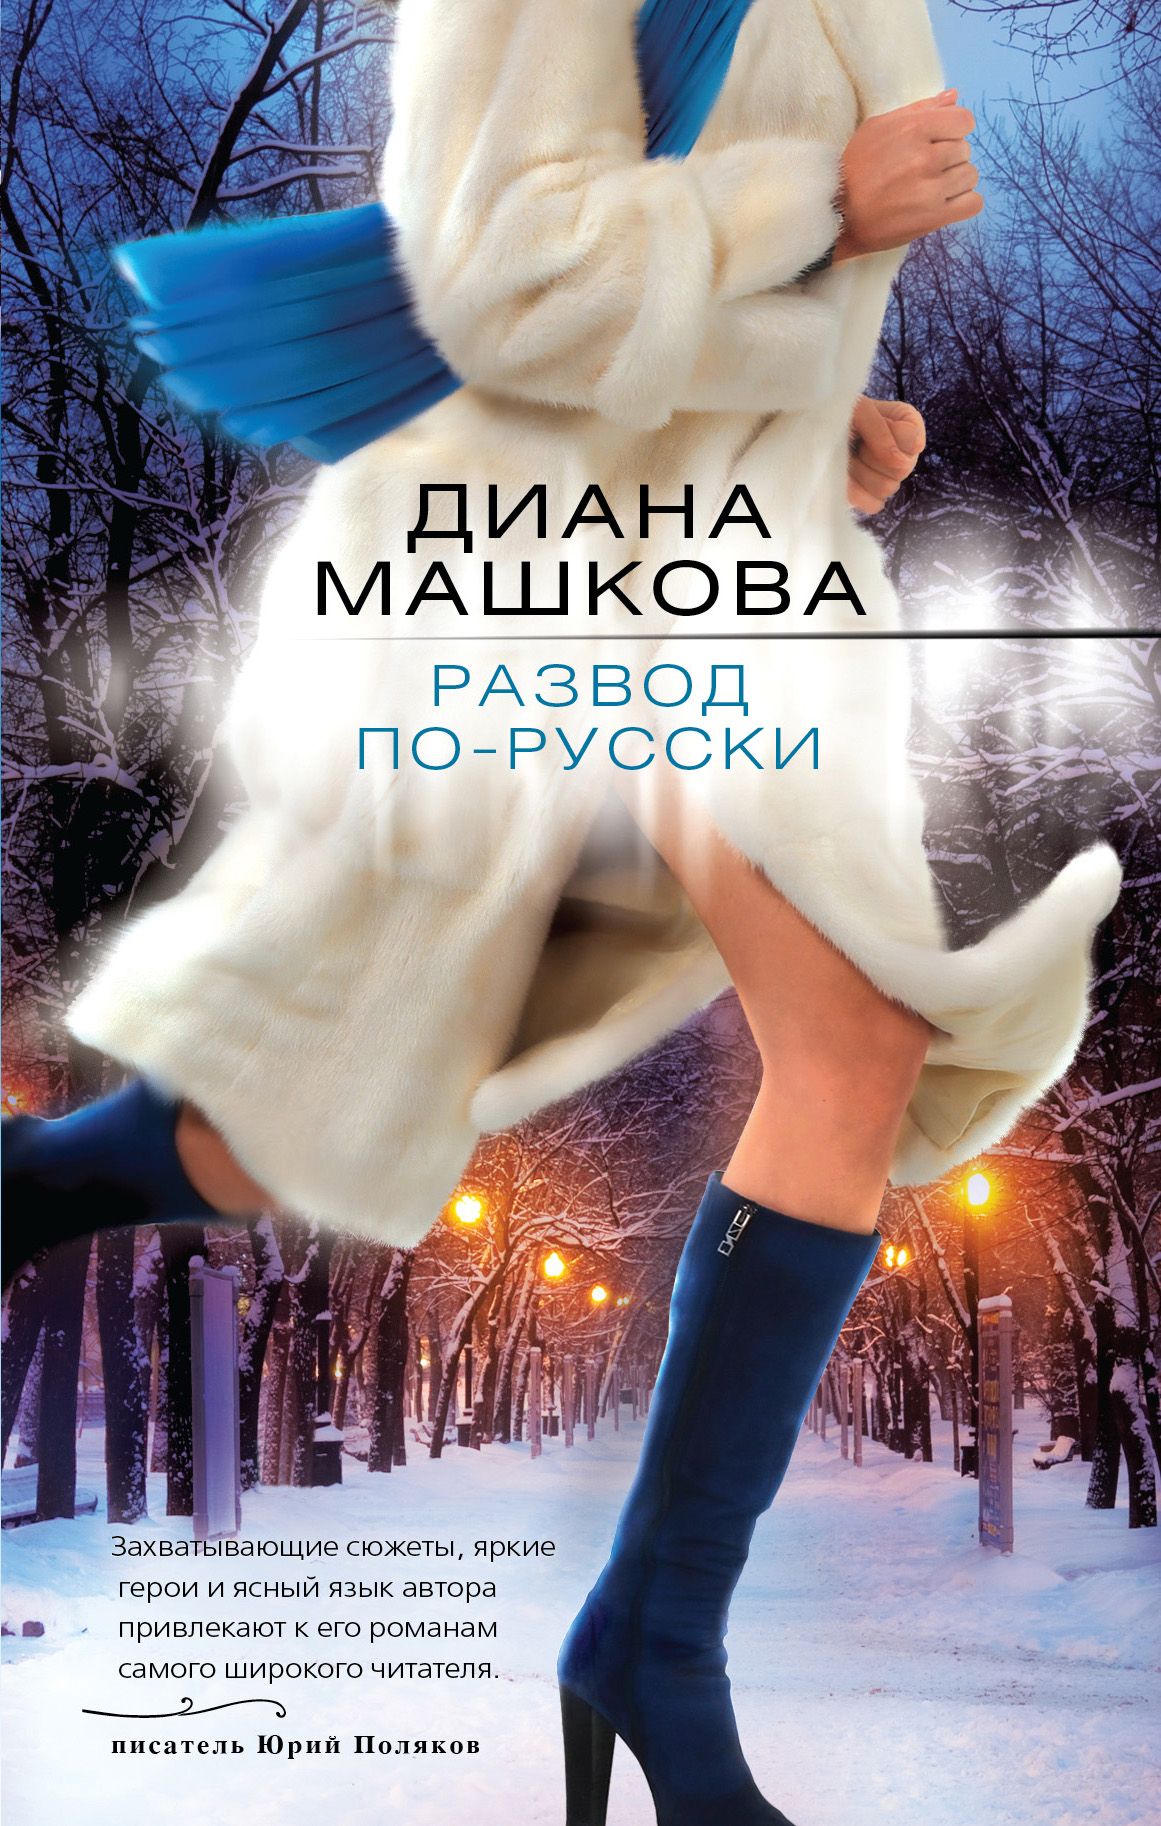 Книга развод не бывшие. Современные любовные романы. Женские романы российских авторов.